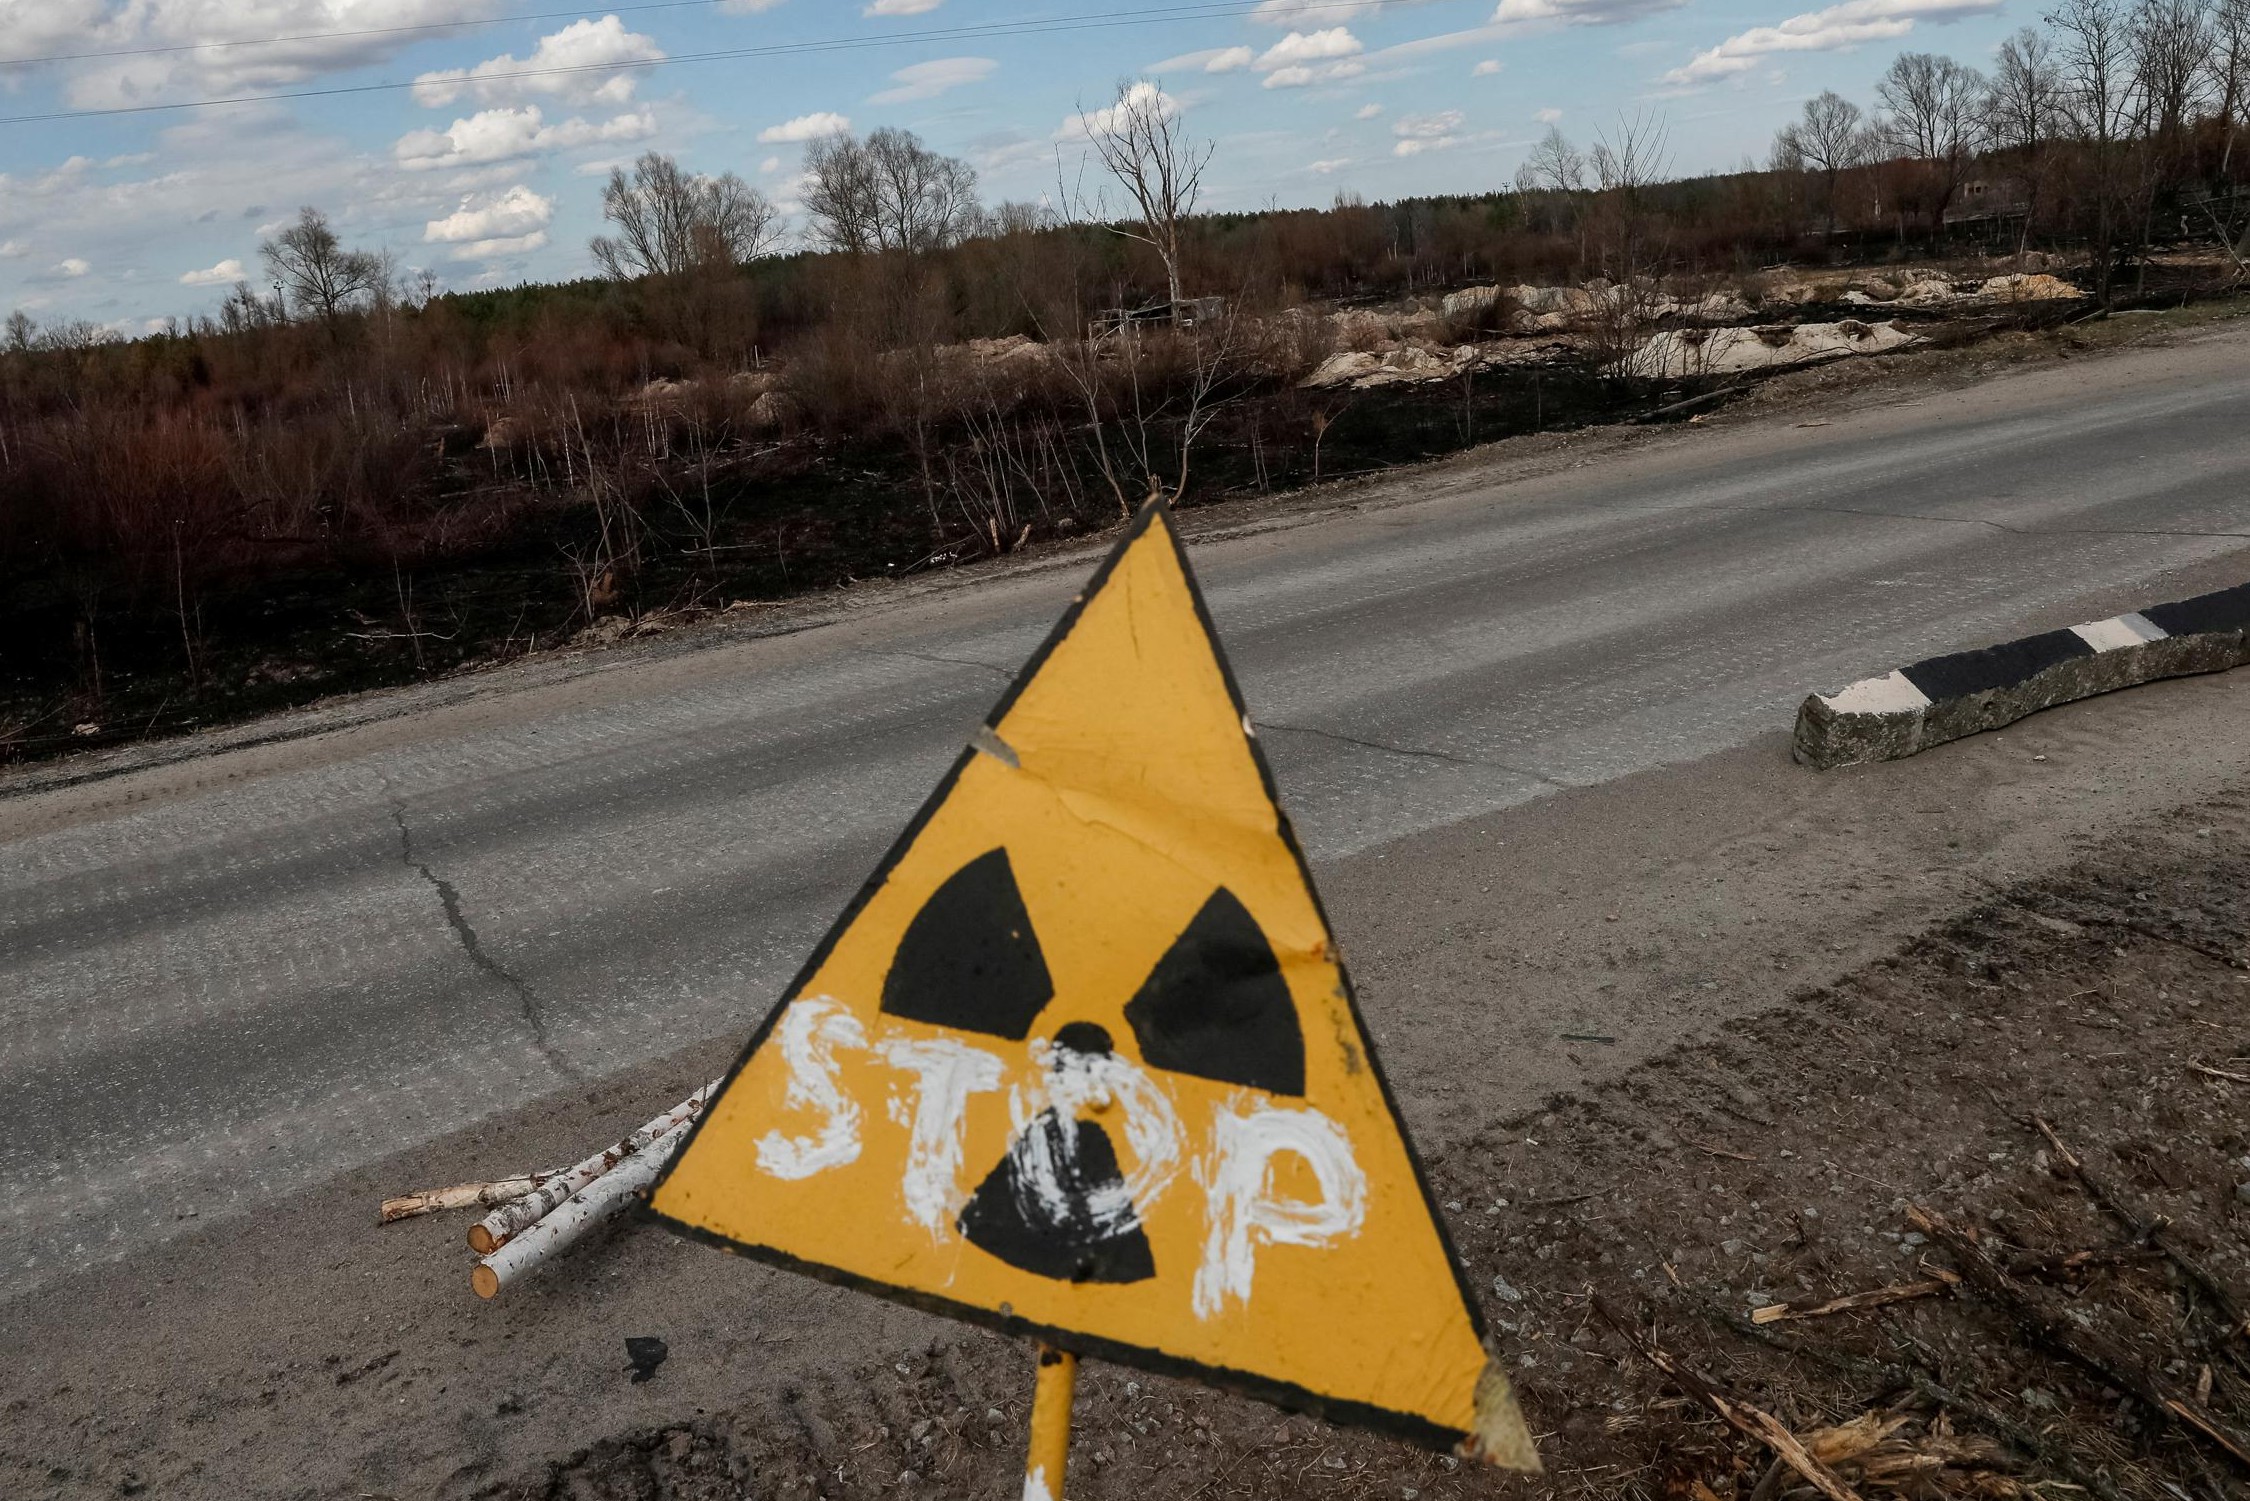 Le autorità ucraine non possono controllare la radioattività a Chernobyl: “I soldati russi risentirebbero degli effetti delle radiazioni”